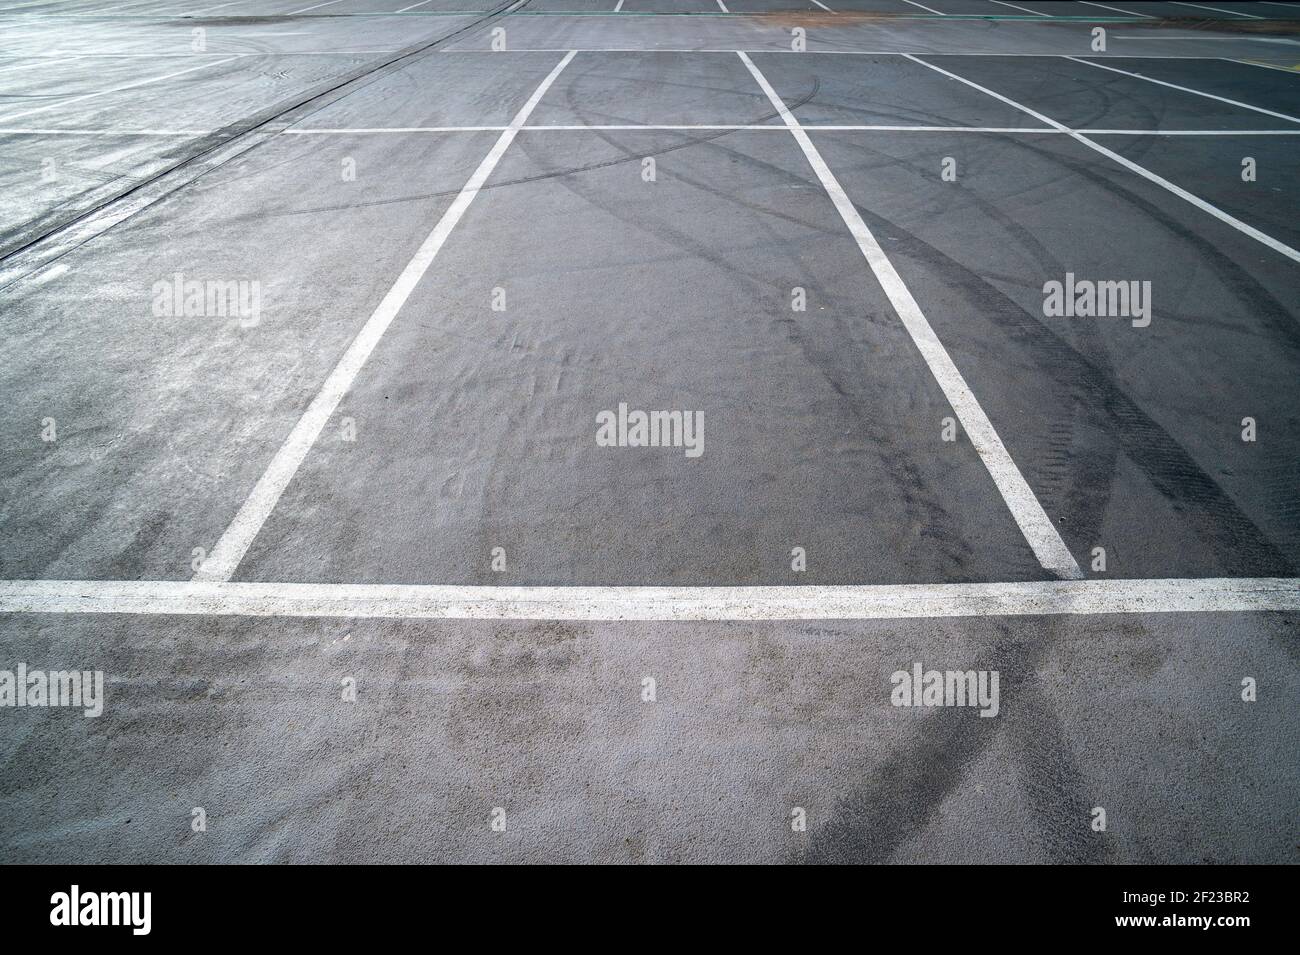 Les aires de stationnement vides sont dotées de lignes peintes en blanc et de marques de pneus noires. Banque D'Images